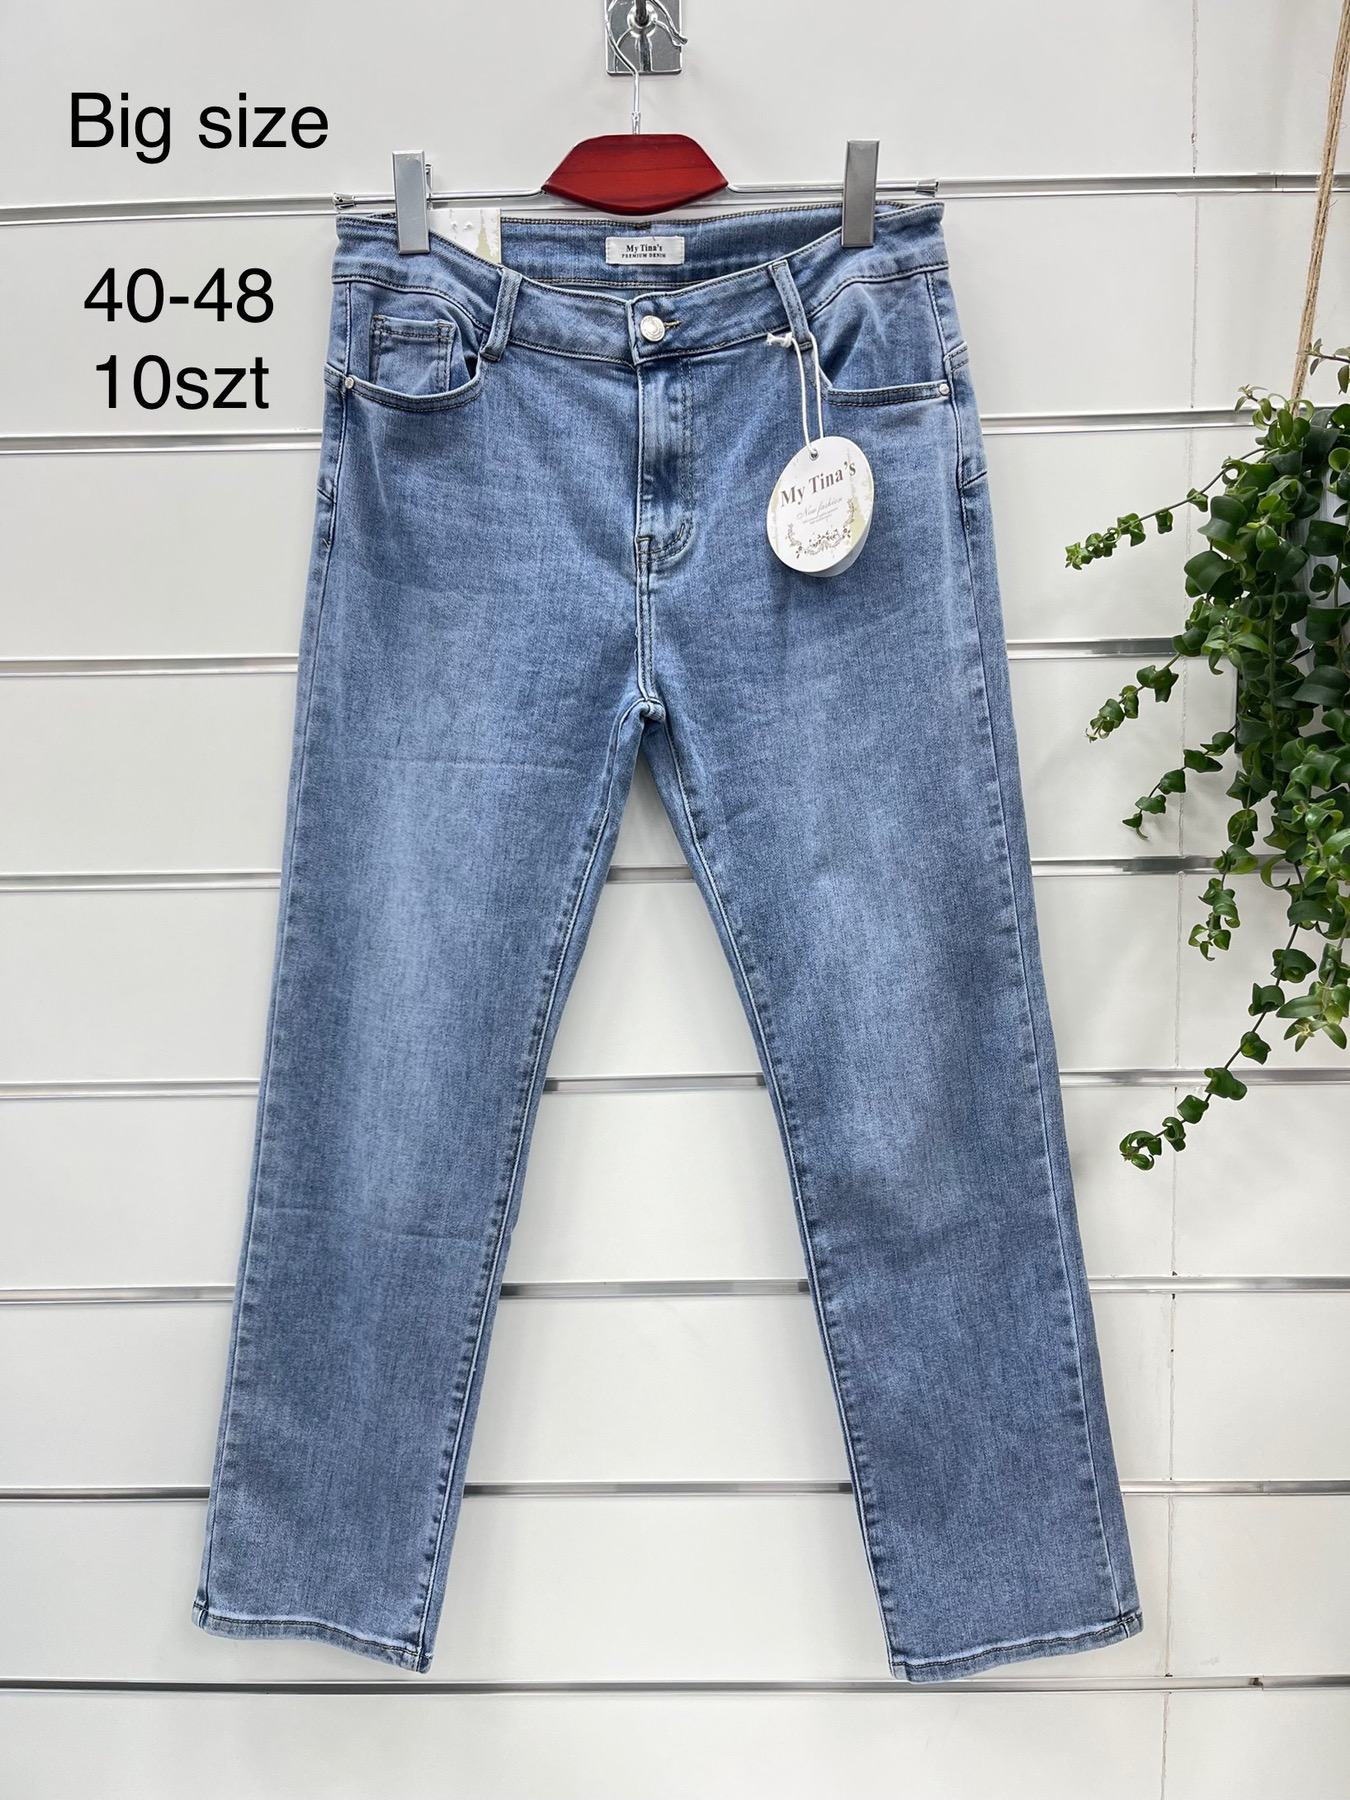 Spodnie  damska jeans duże . Roz 40-48 . Paszka 10 szt . 1 Kolor .